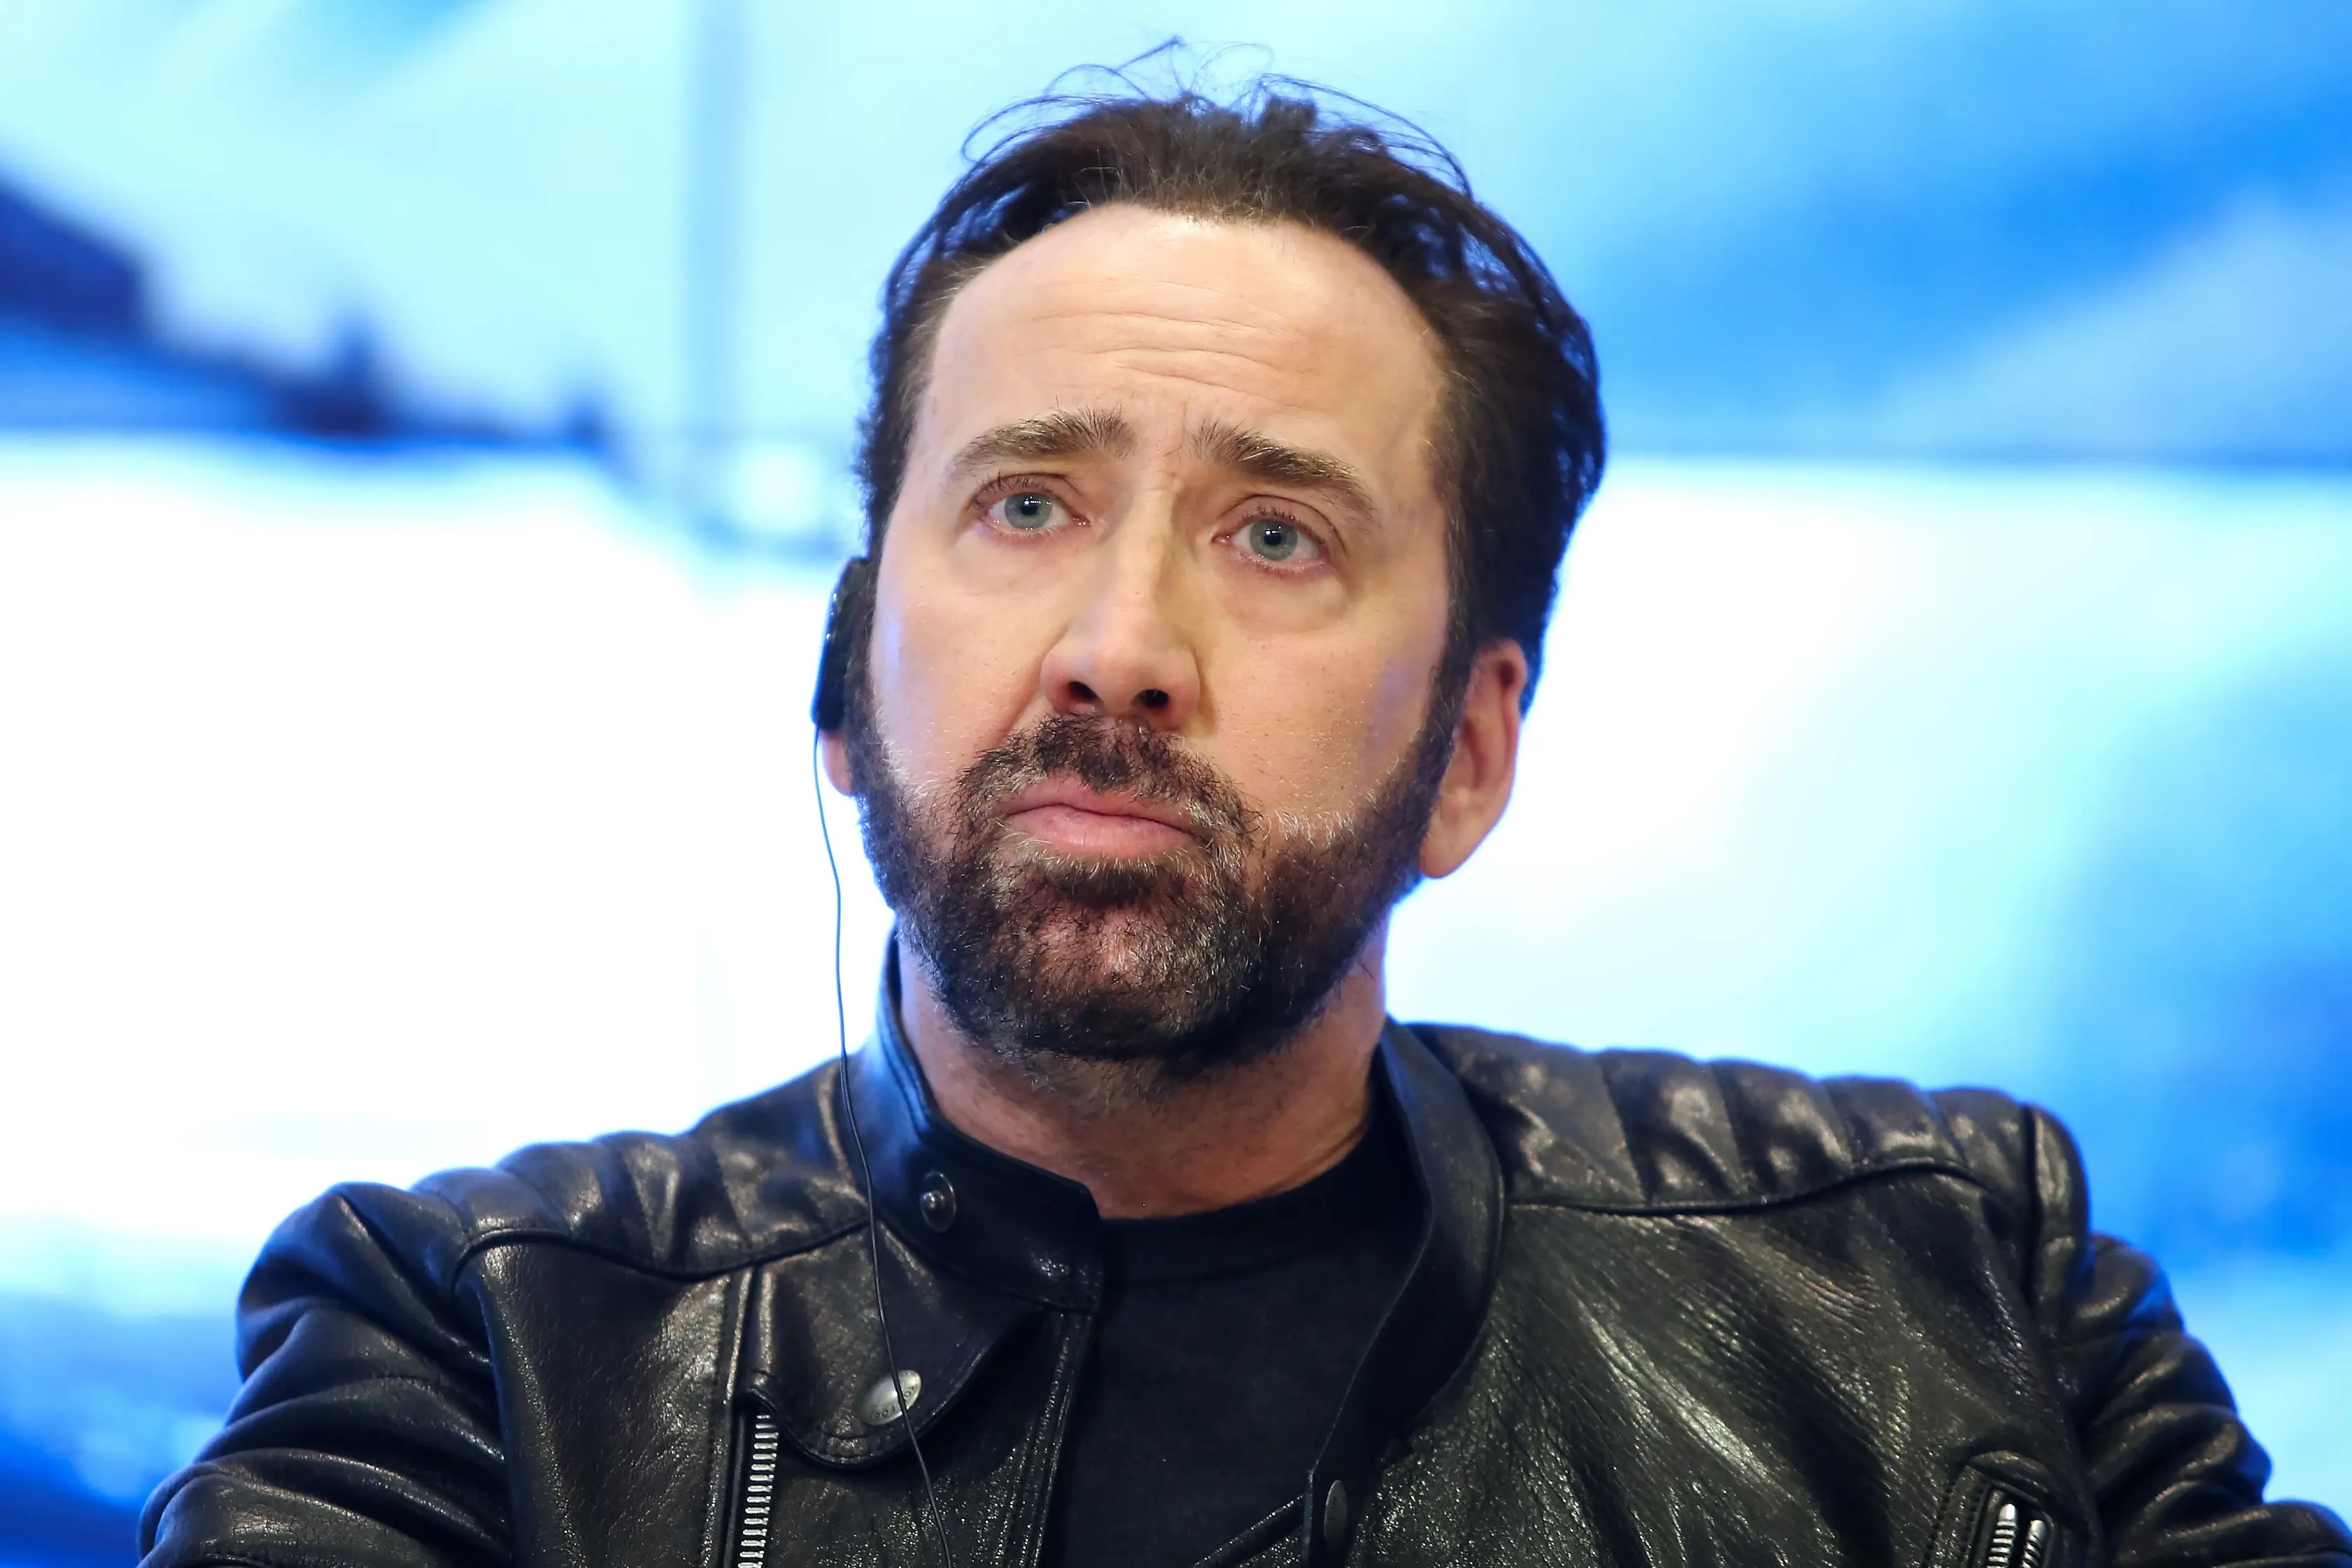 Crazy ways that actors do to portray drug addicts, Nicolas Cage